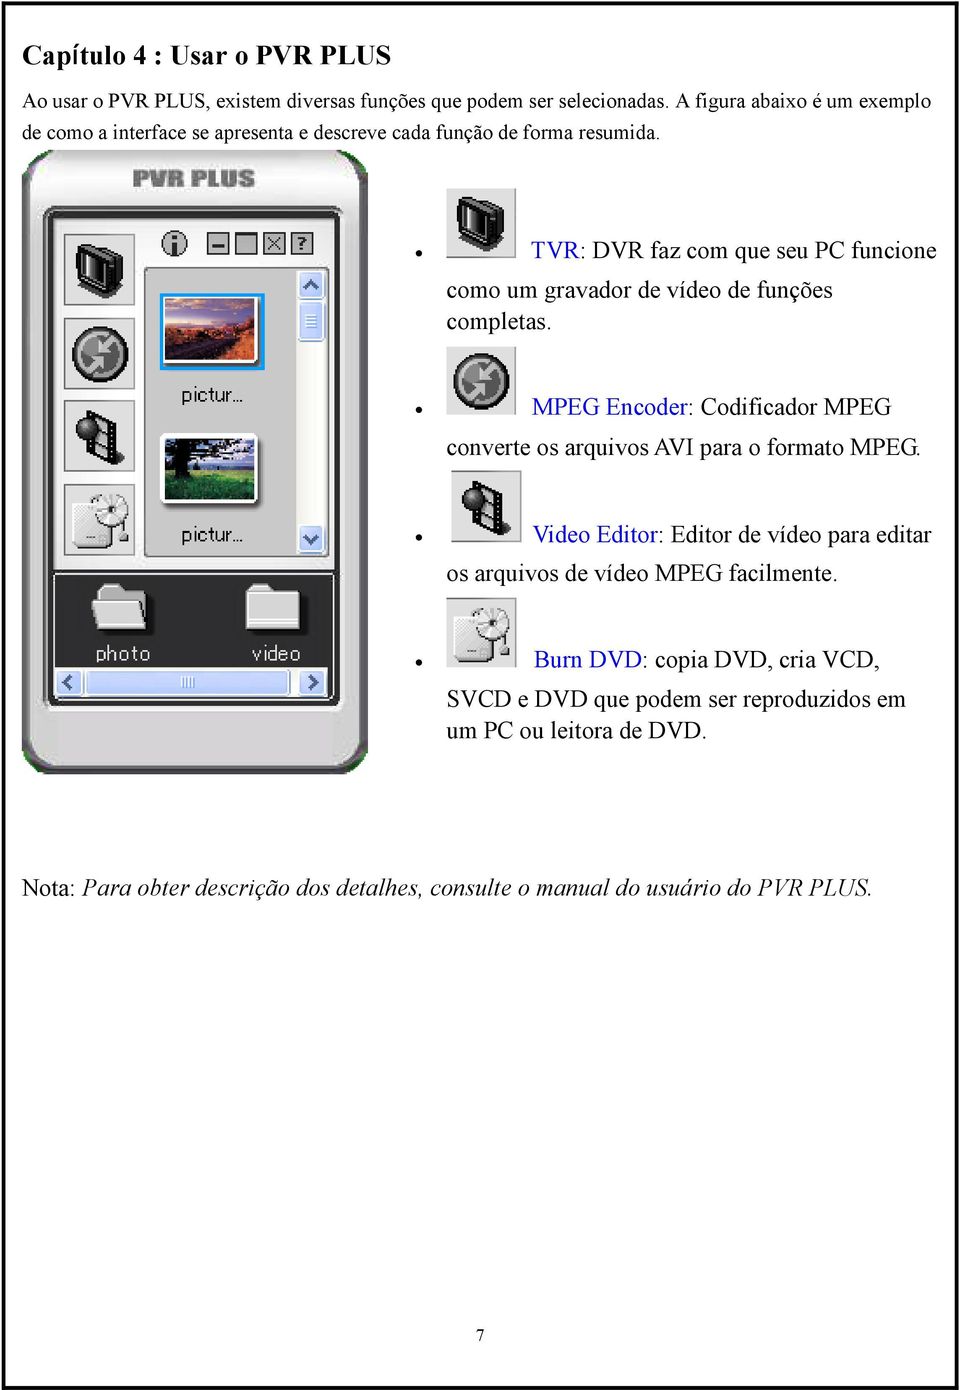 TVR: DVR faz com que seu PC funcione como um gravador de vídeo de funções completas.